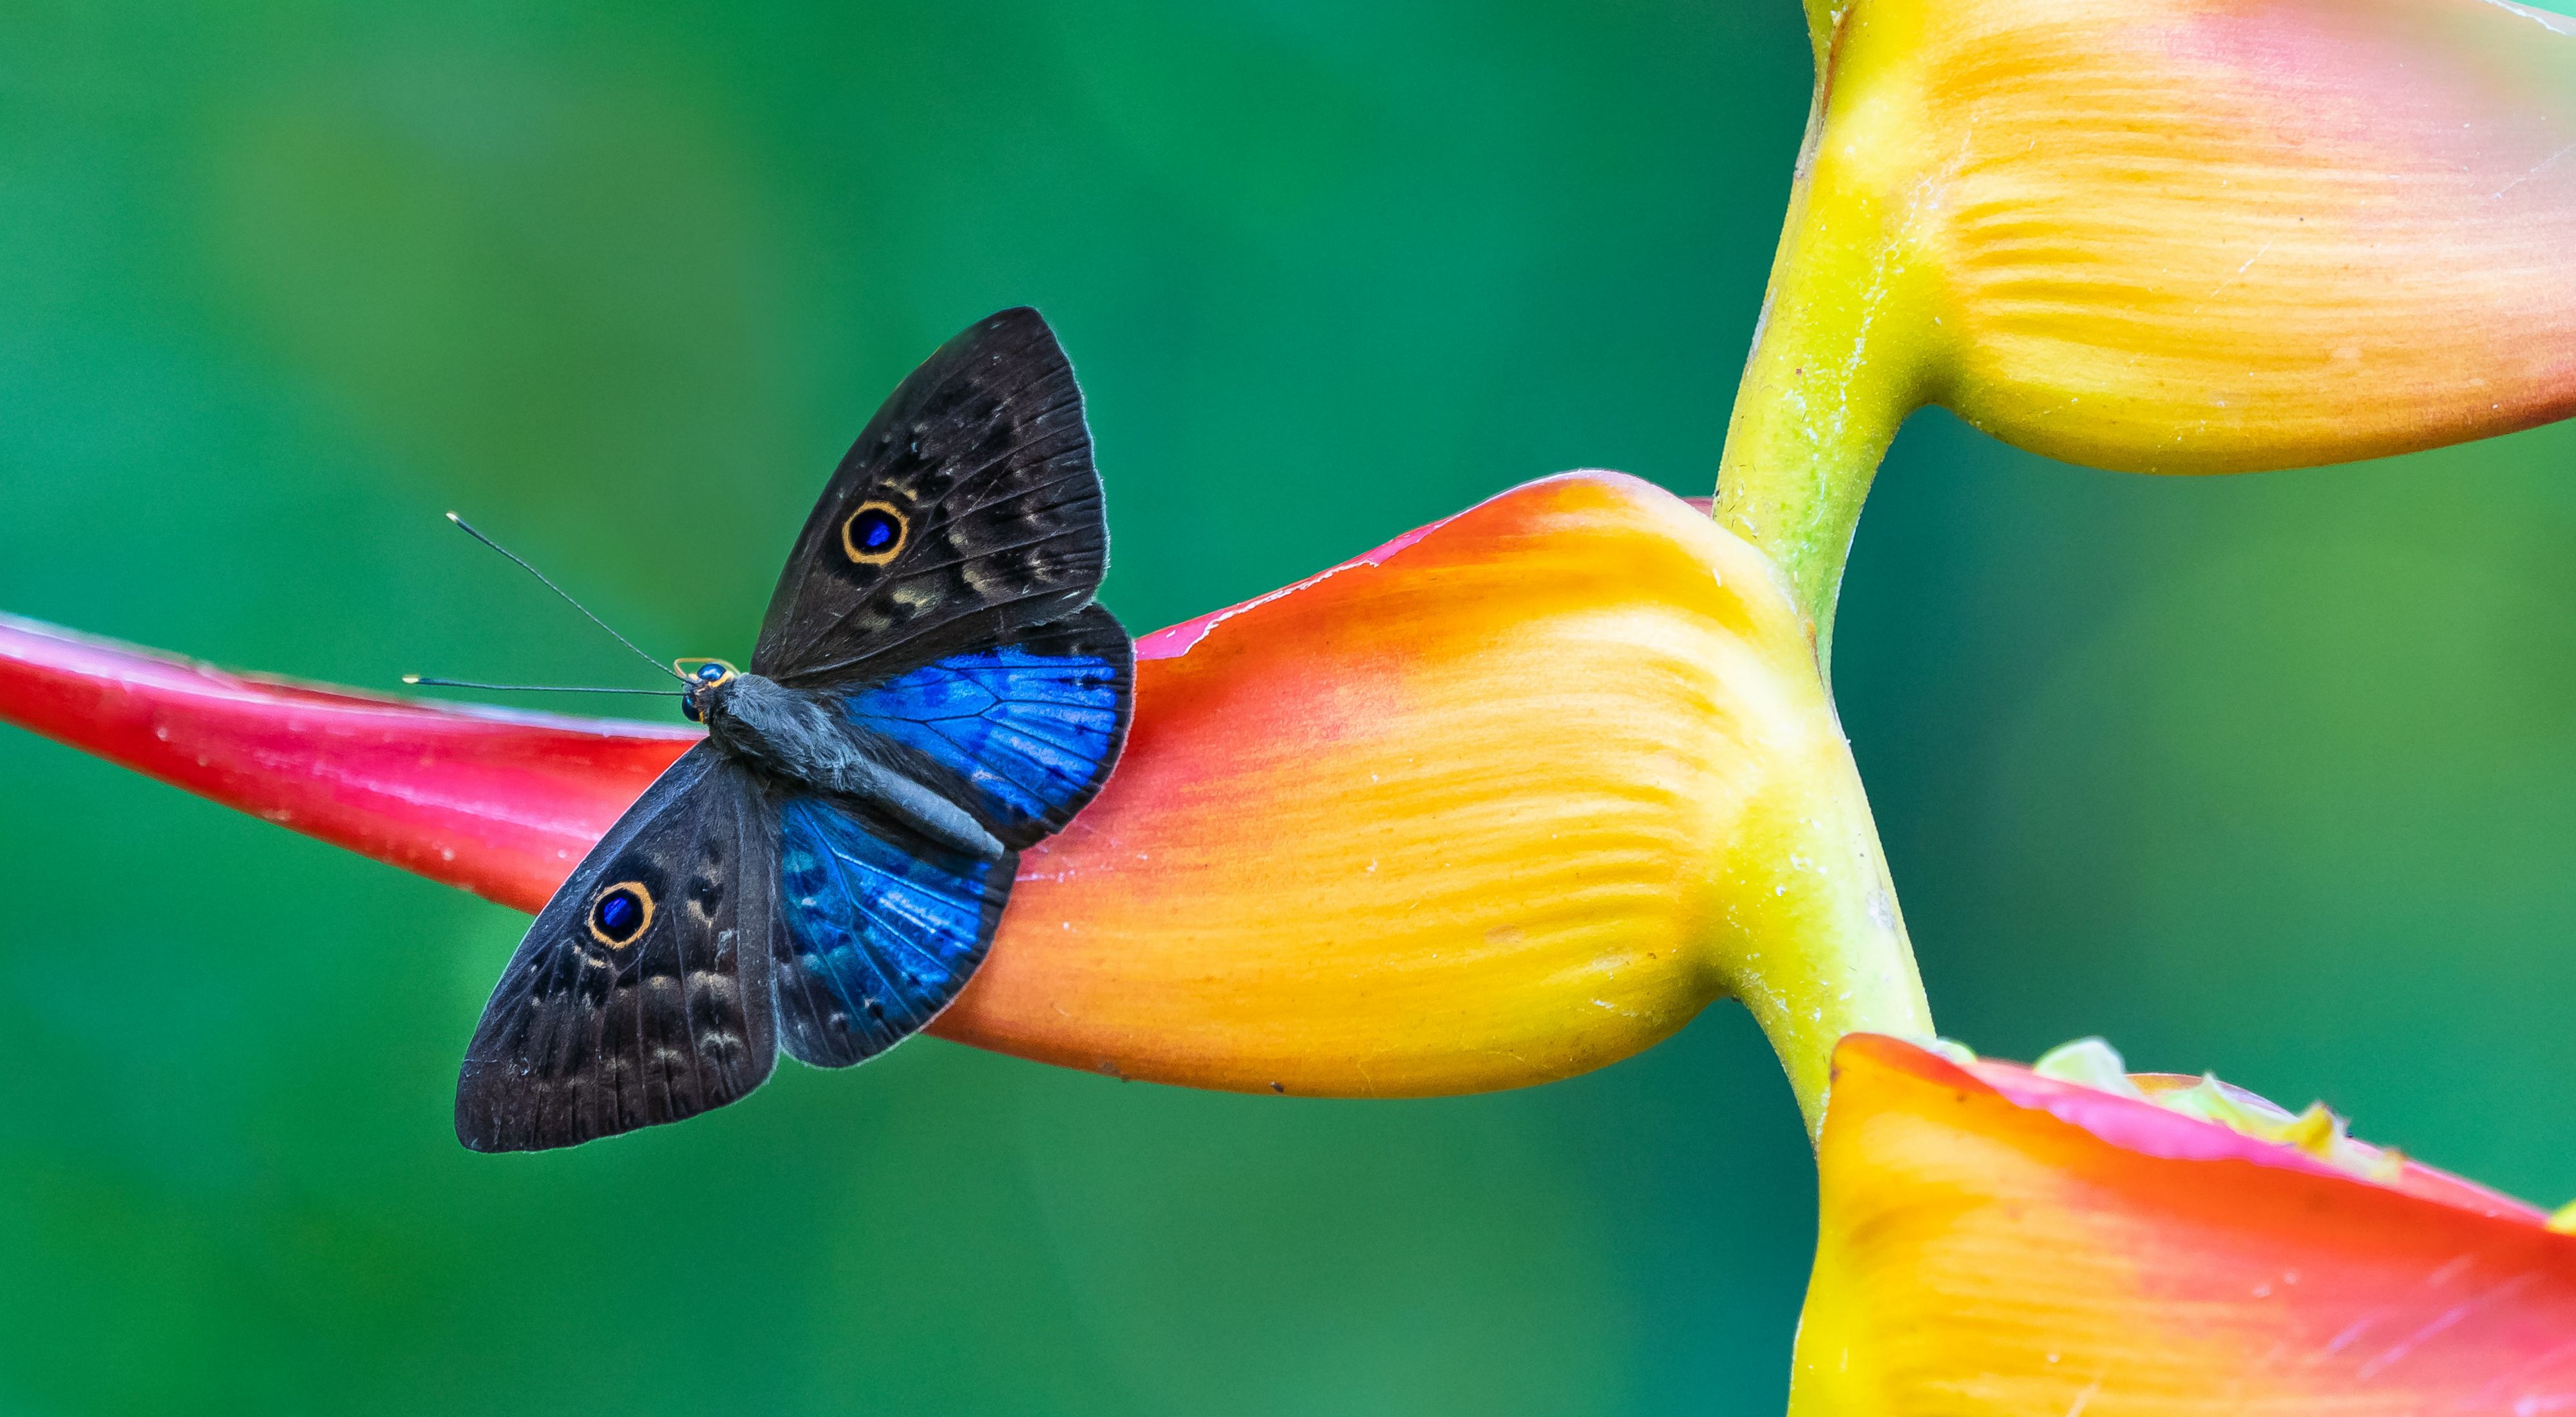 una mariposa azul y negra descansa sobre una colorida flor amarilla y rosa